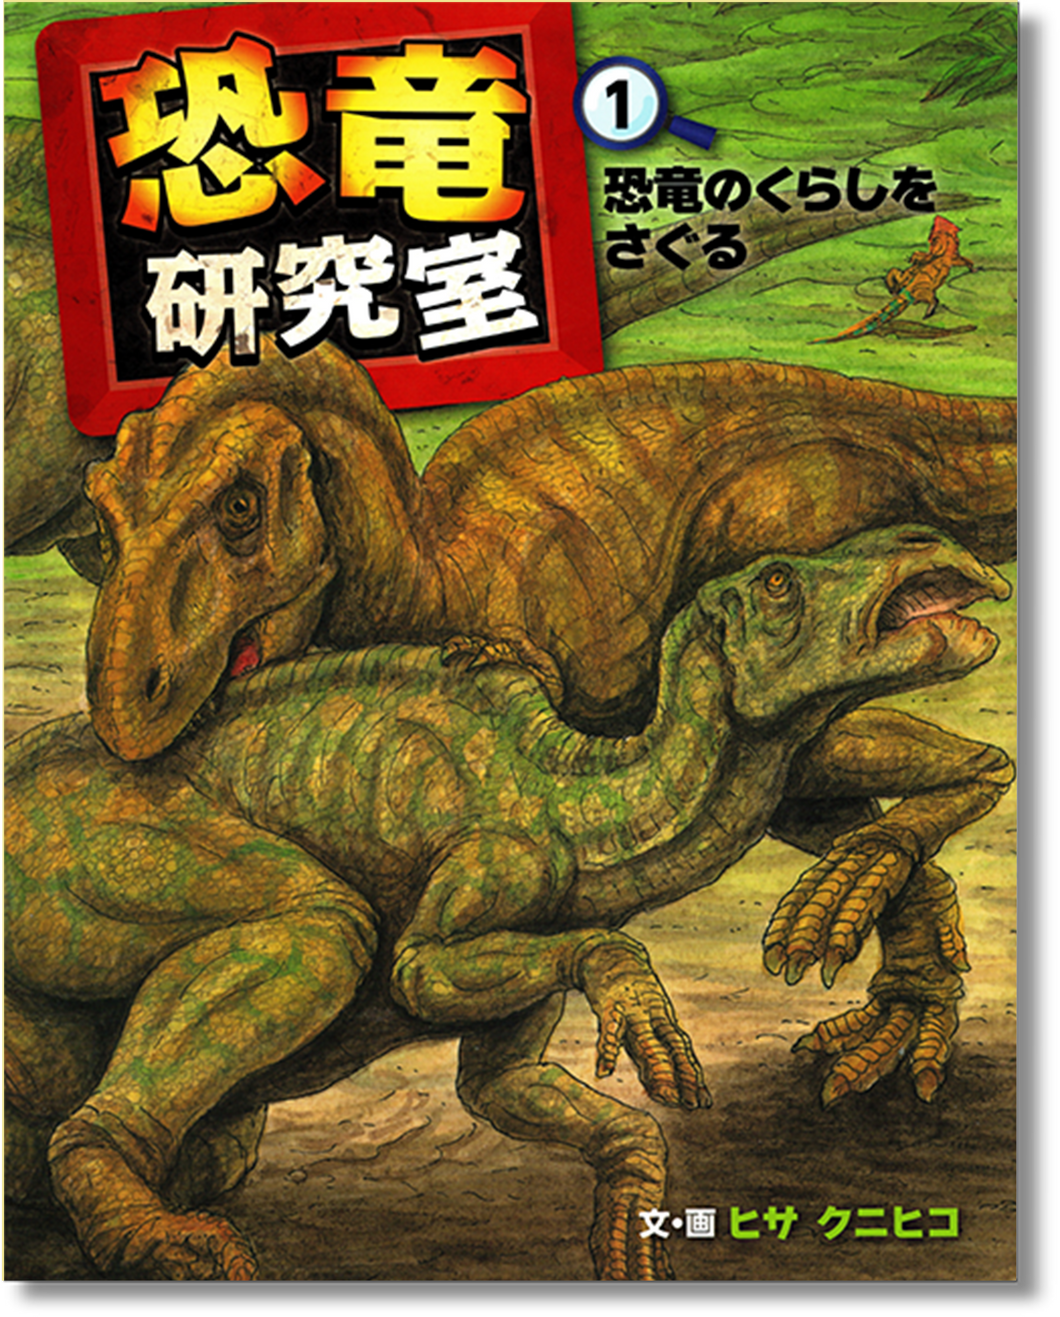 恐竜研究室 1 -恐竜のくらしをさぐる (*取寄せ書籍)